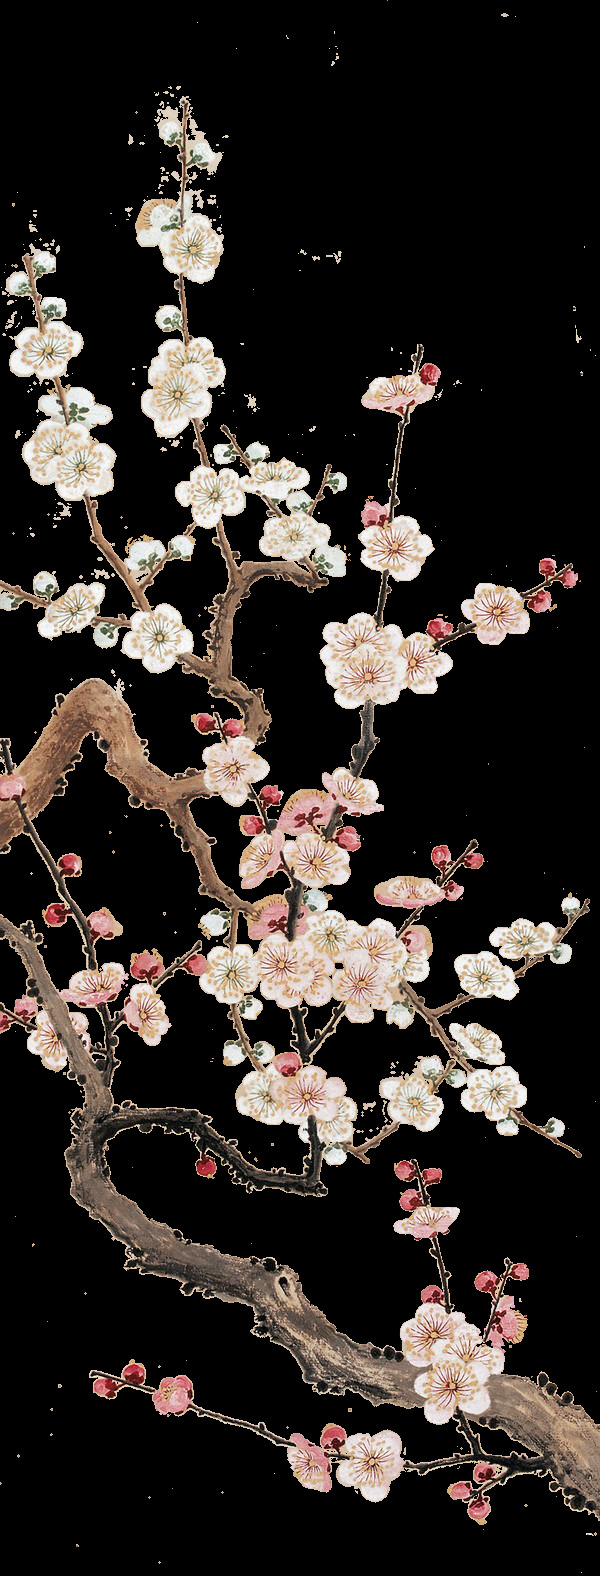 水墨 手绘 樱花 树枝 设计素材 花瓣 浪漫背景 花枝 装饰元素 樱花树枝 樱花素材 水彩 水墨樱花